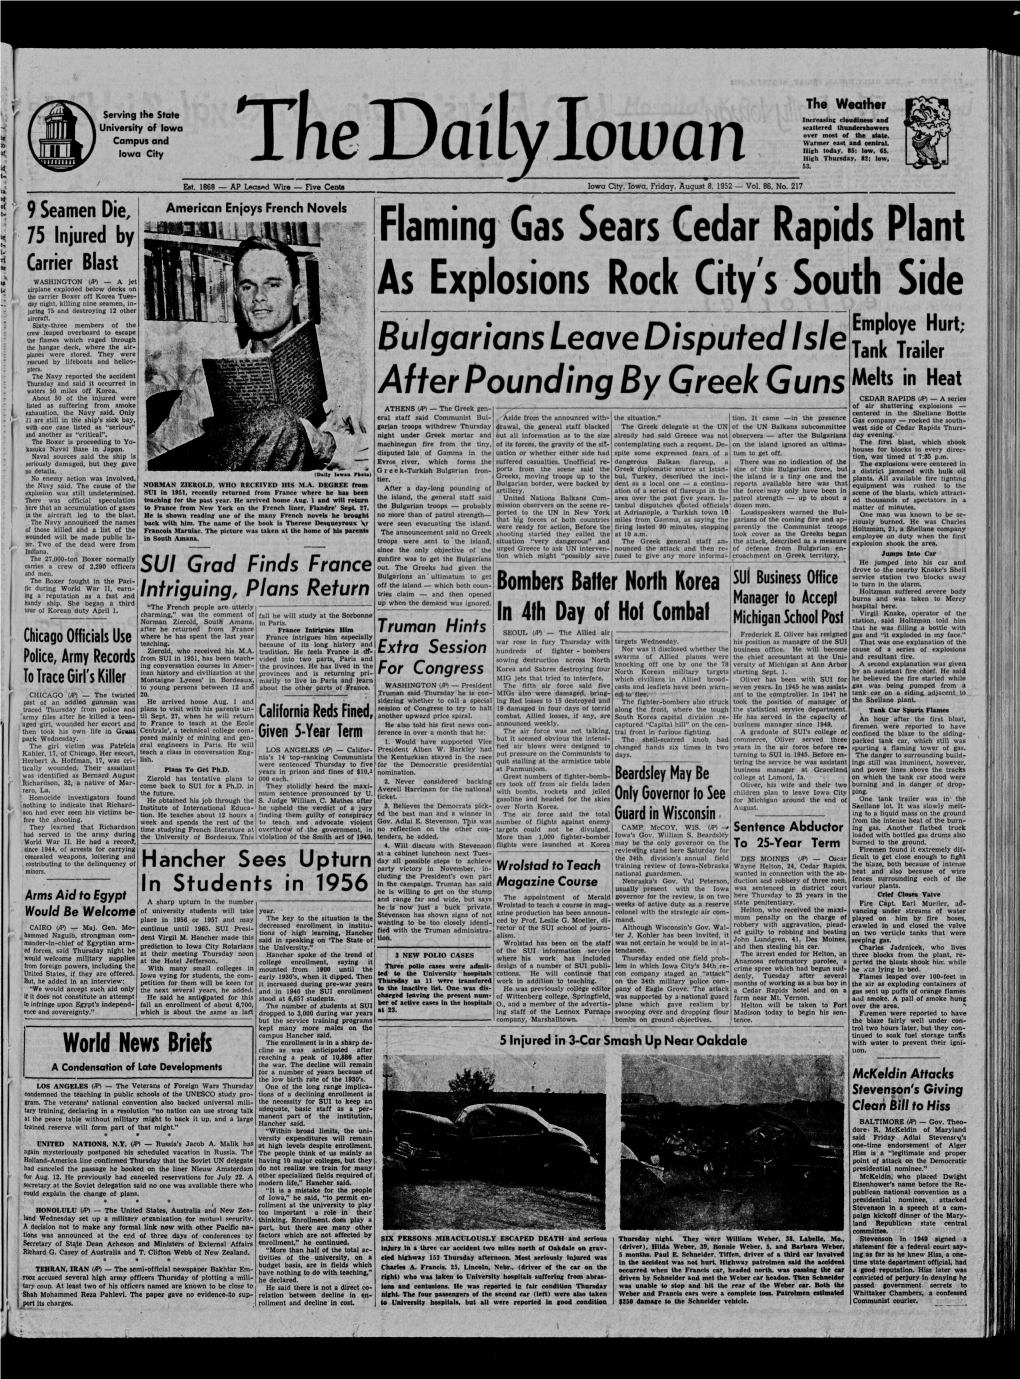 Daily Iowan (Iowa City, Iowa), 1952-08-08